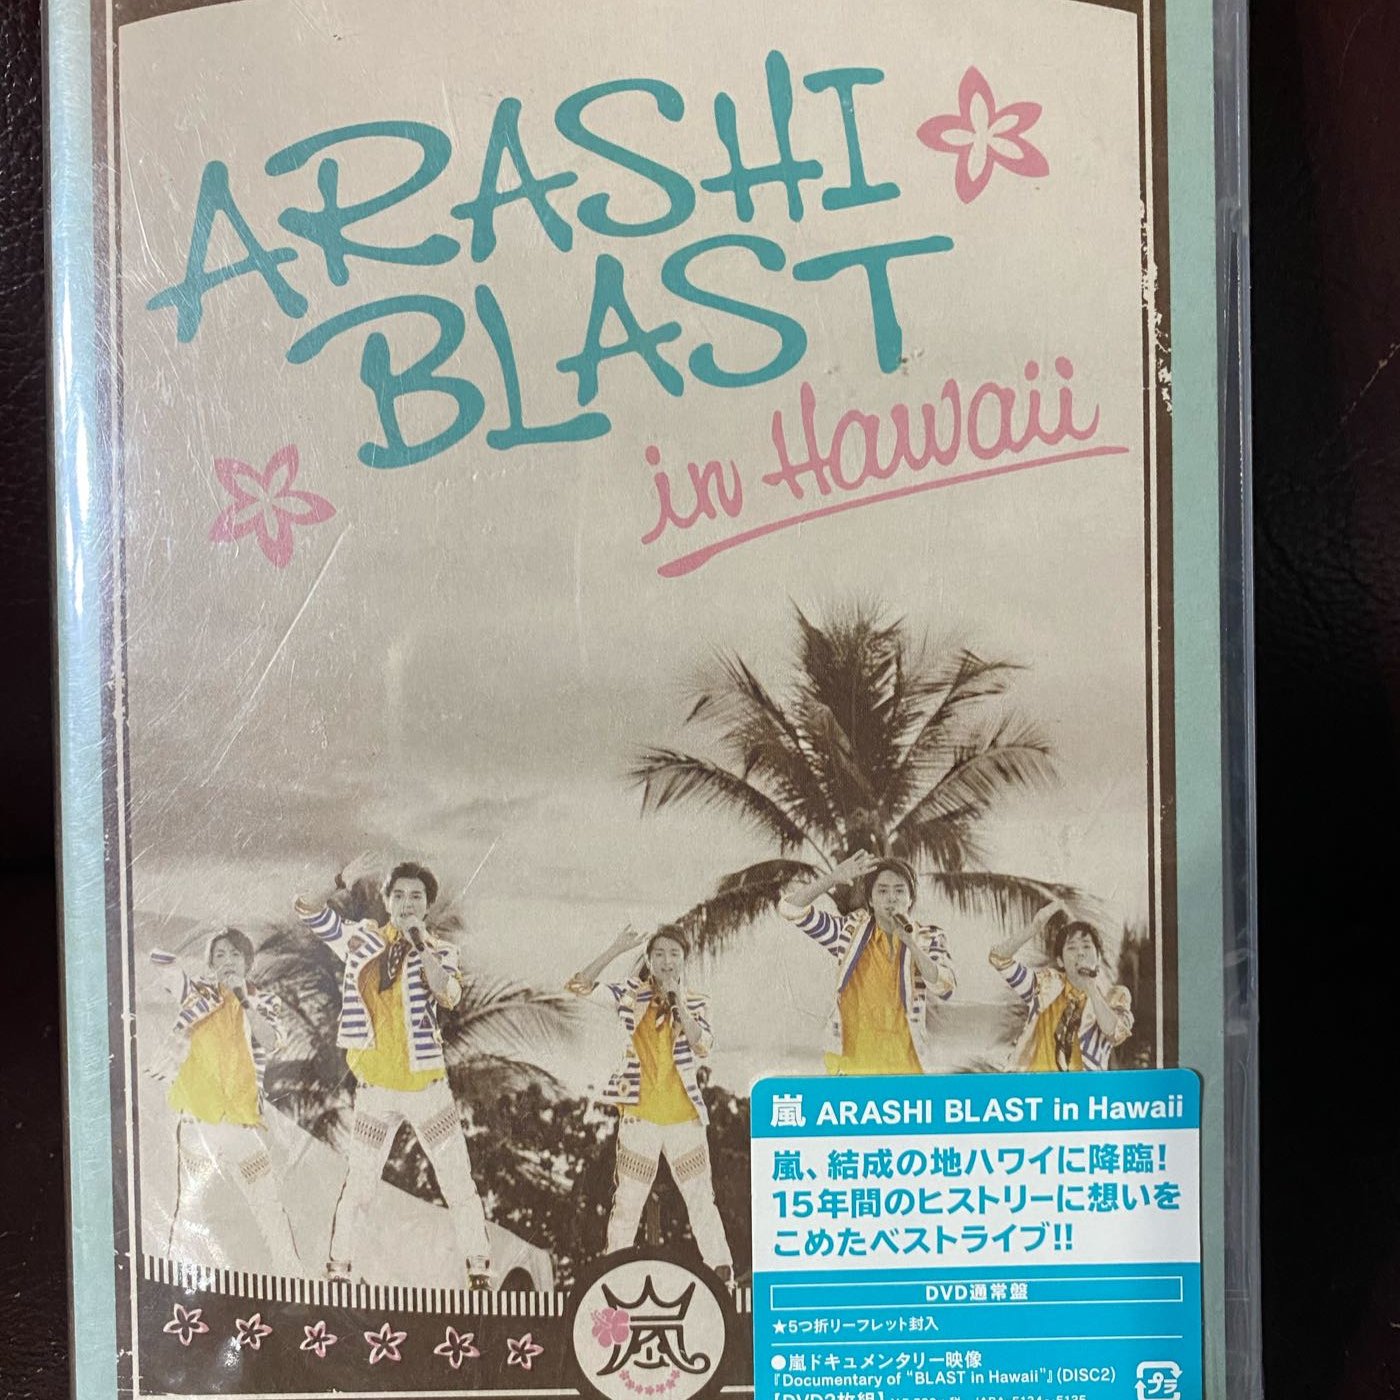 品質のいい ARASHI BLAST ARASHI blast in in Hawaii DVD